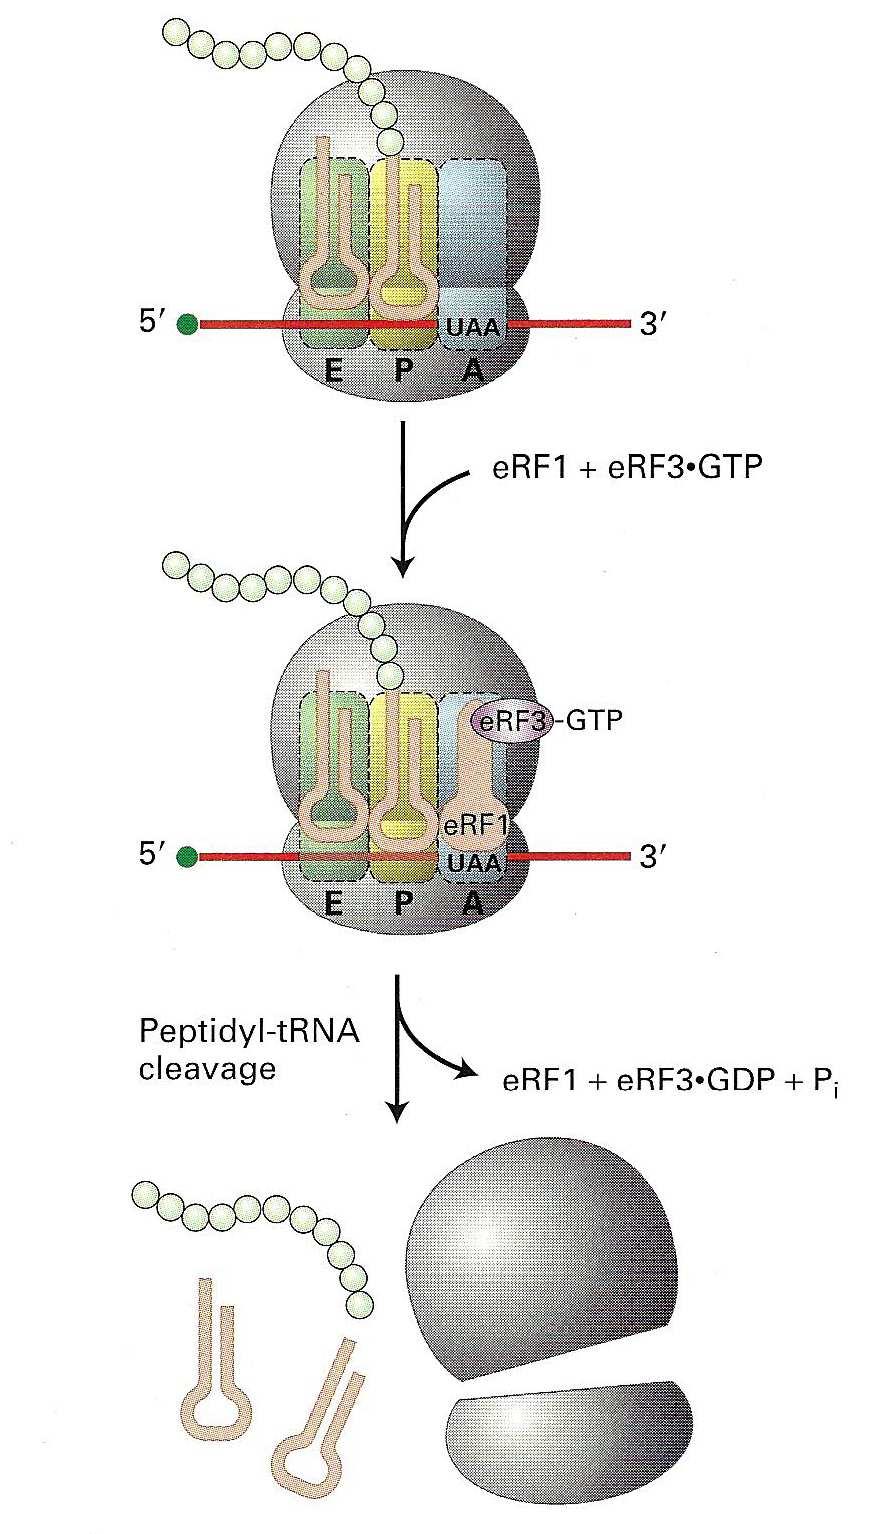 27 δεύτερο αµινοξύ προσαρτάται στην θέση Α του ριβοσώµατος. Στο στάδιο 2, γίνεται µια αλλάγή στην διαµόρφωση του ριβοσώµατος, µέσω της υδρόλυσης του GTP στο ef1α*gtp σύµπλεγµα.